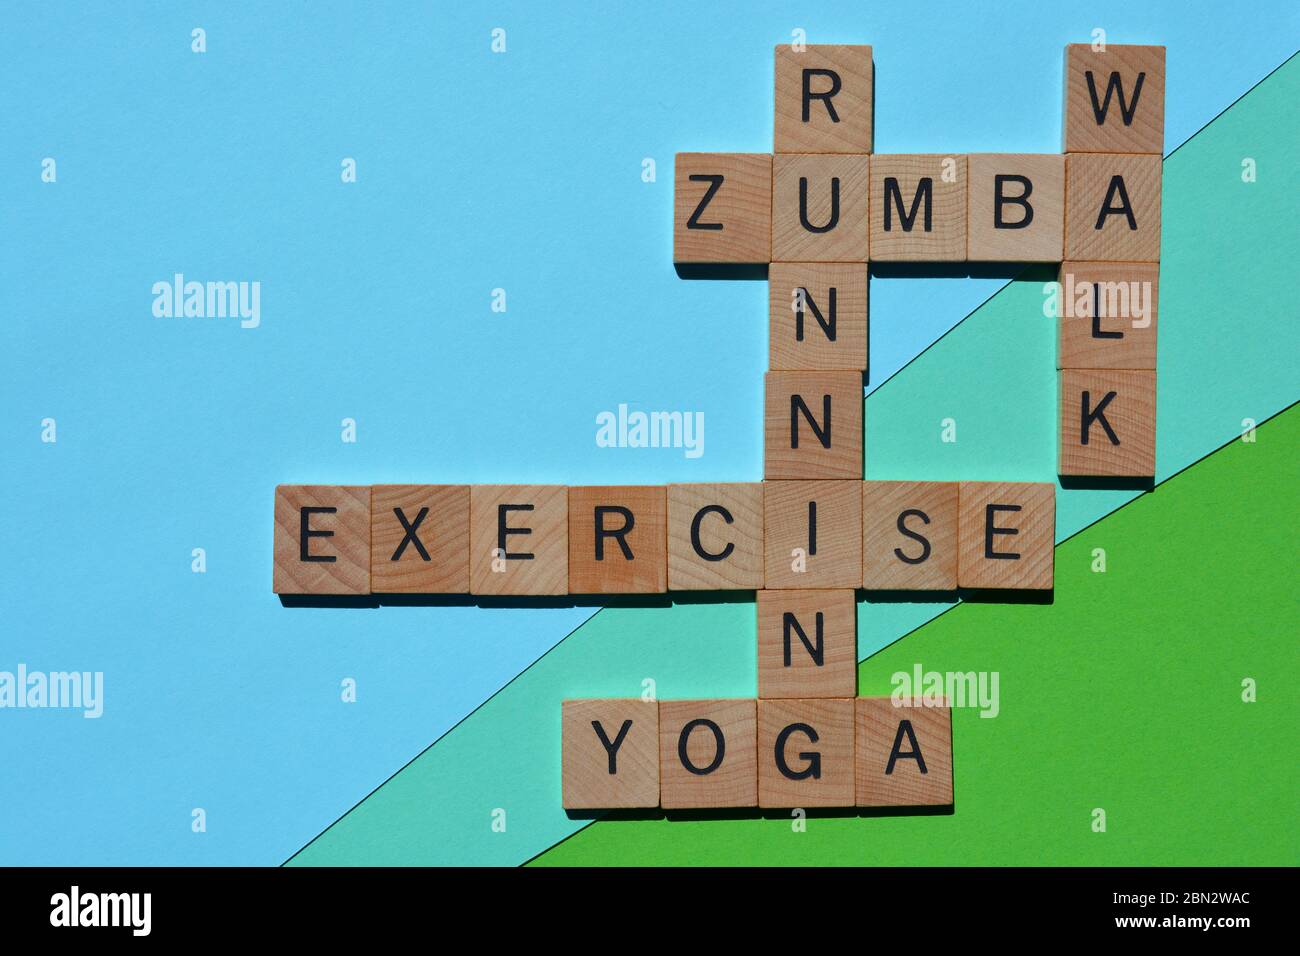 Exercice, course, Yoga, Zumba, Marche, mots croisés isolés sur fond coloré Banque D'Images